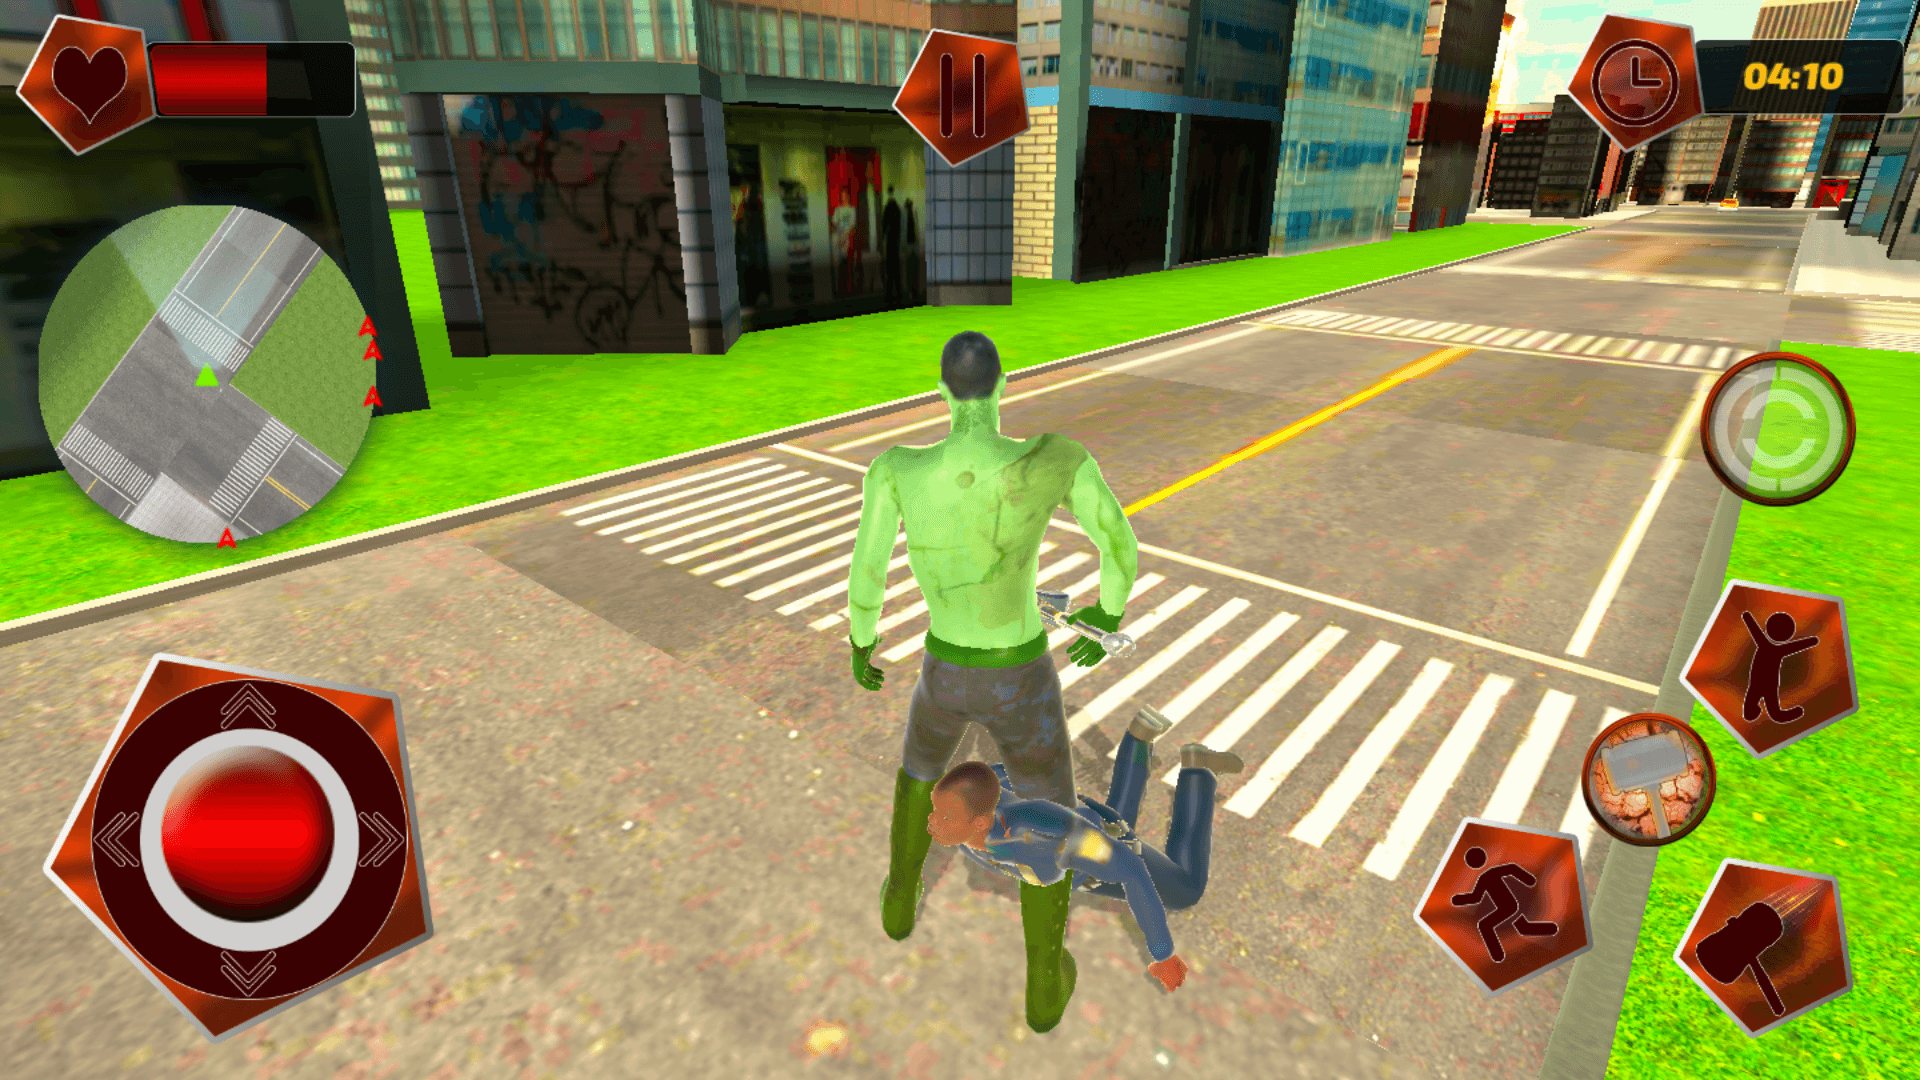 New York Hammer Monster : City Destroy Mission Game 64BIT Source Code